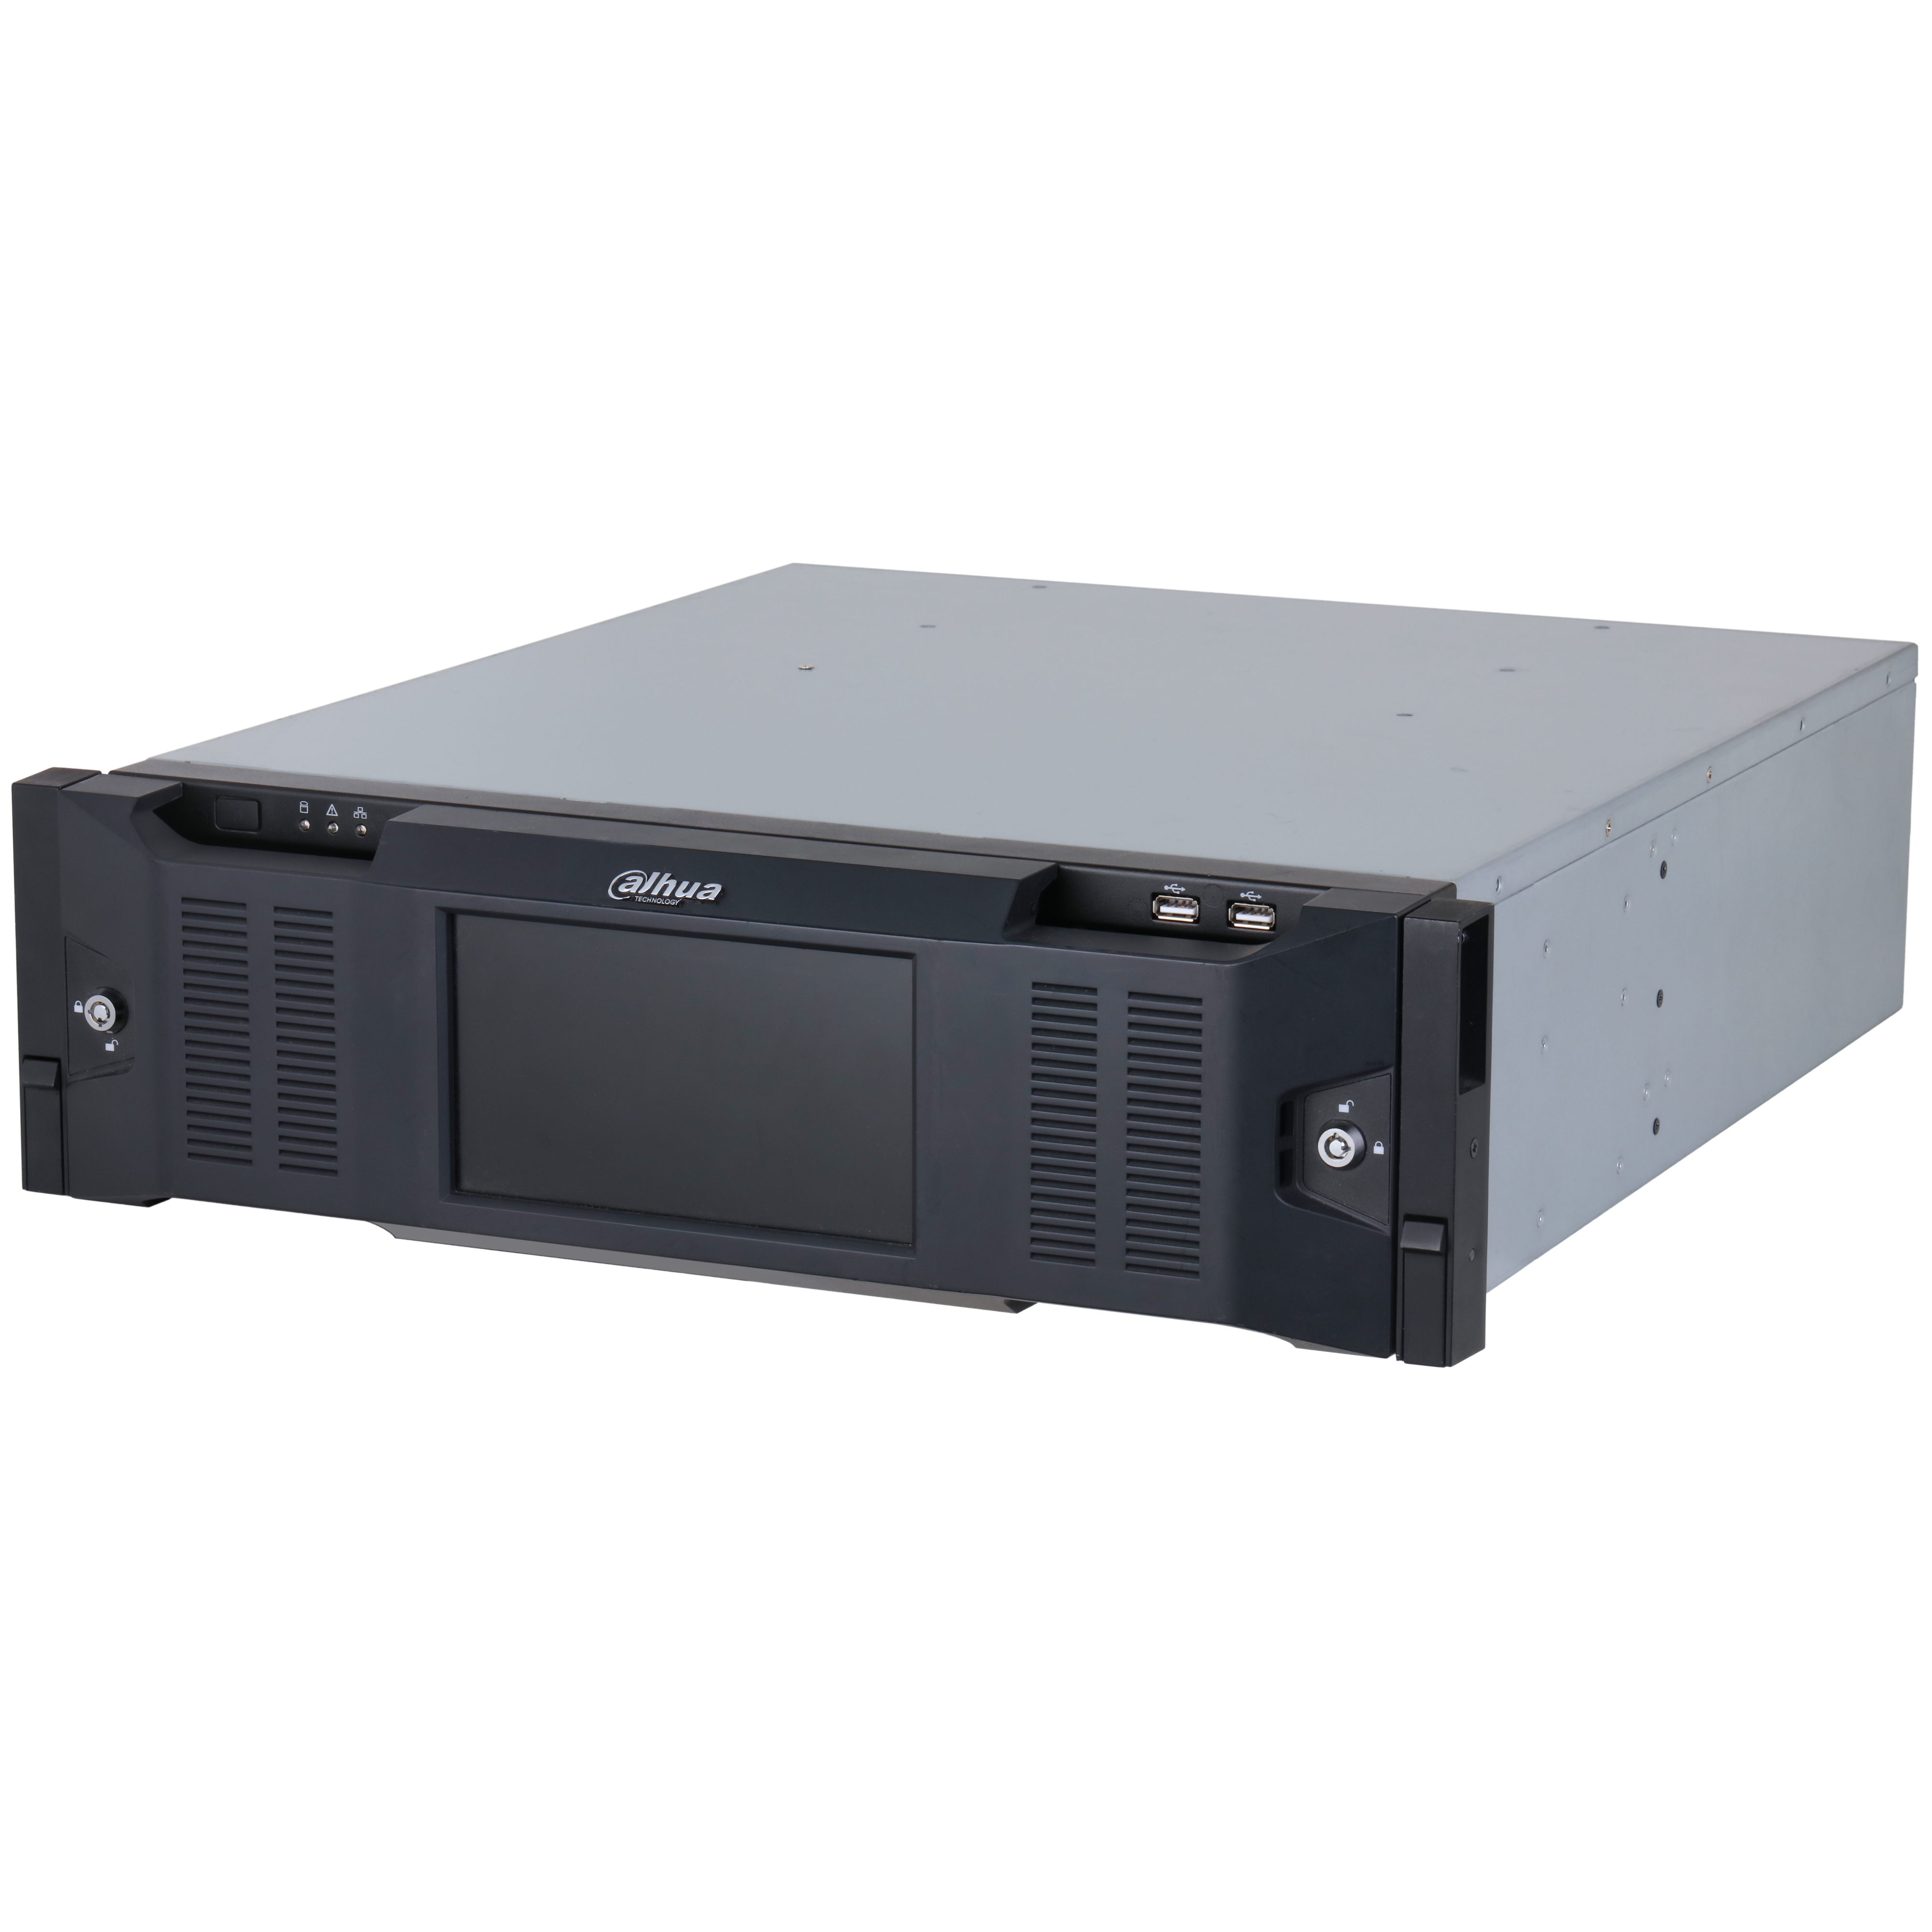 DAHUA IVSS7116DR-4I 256CH 3U Intelligent Video Surveillance Server